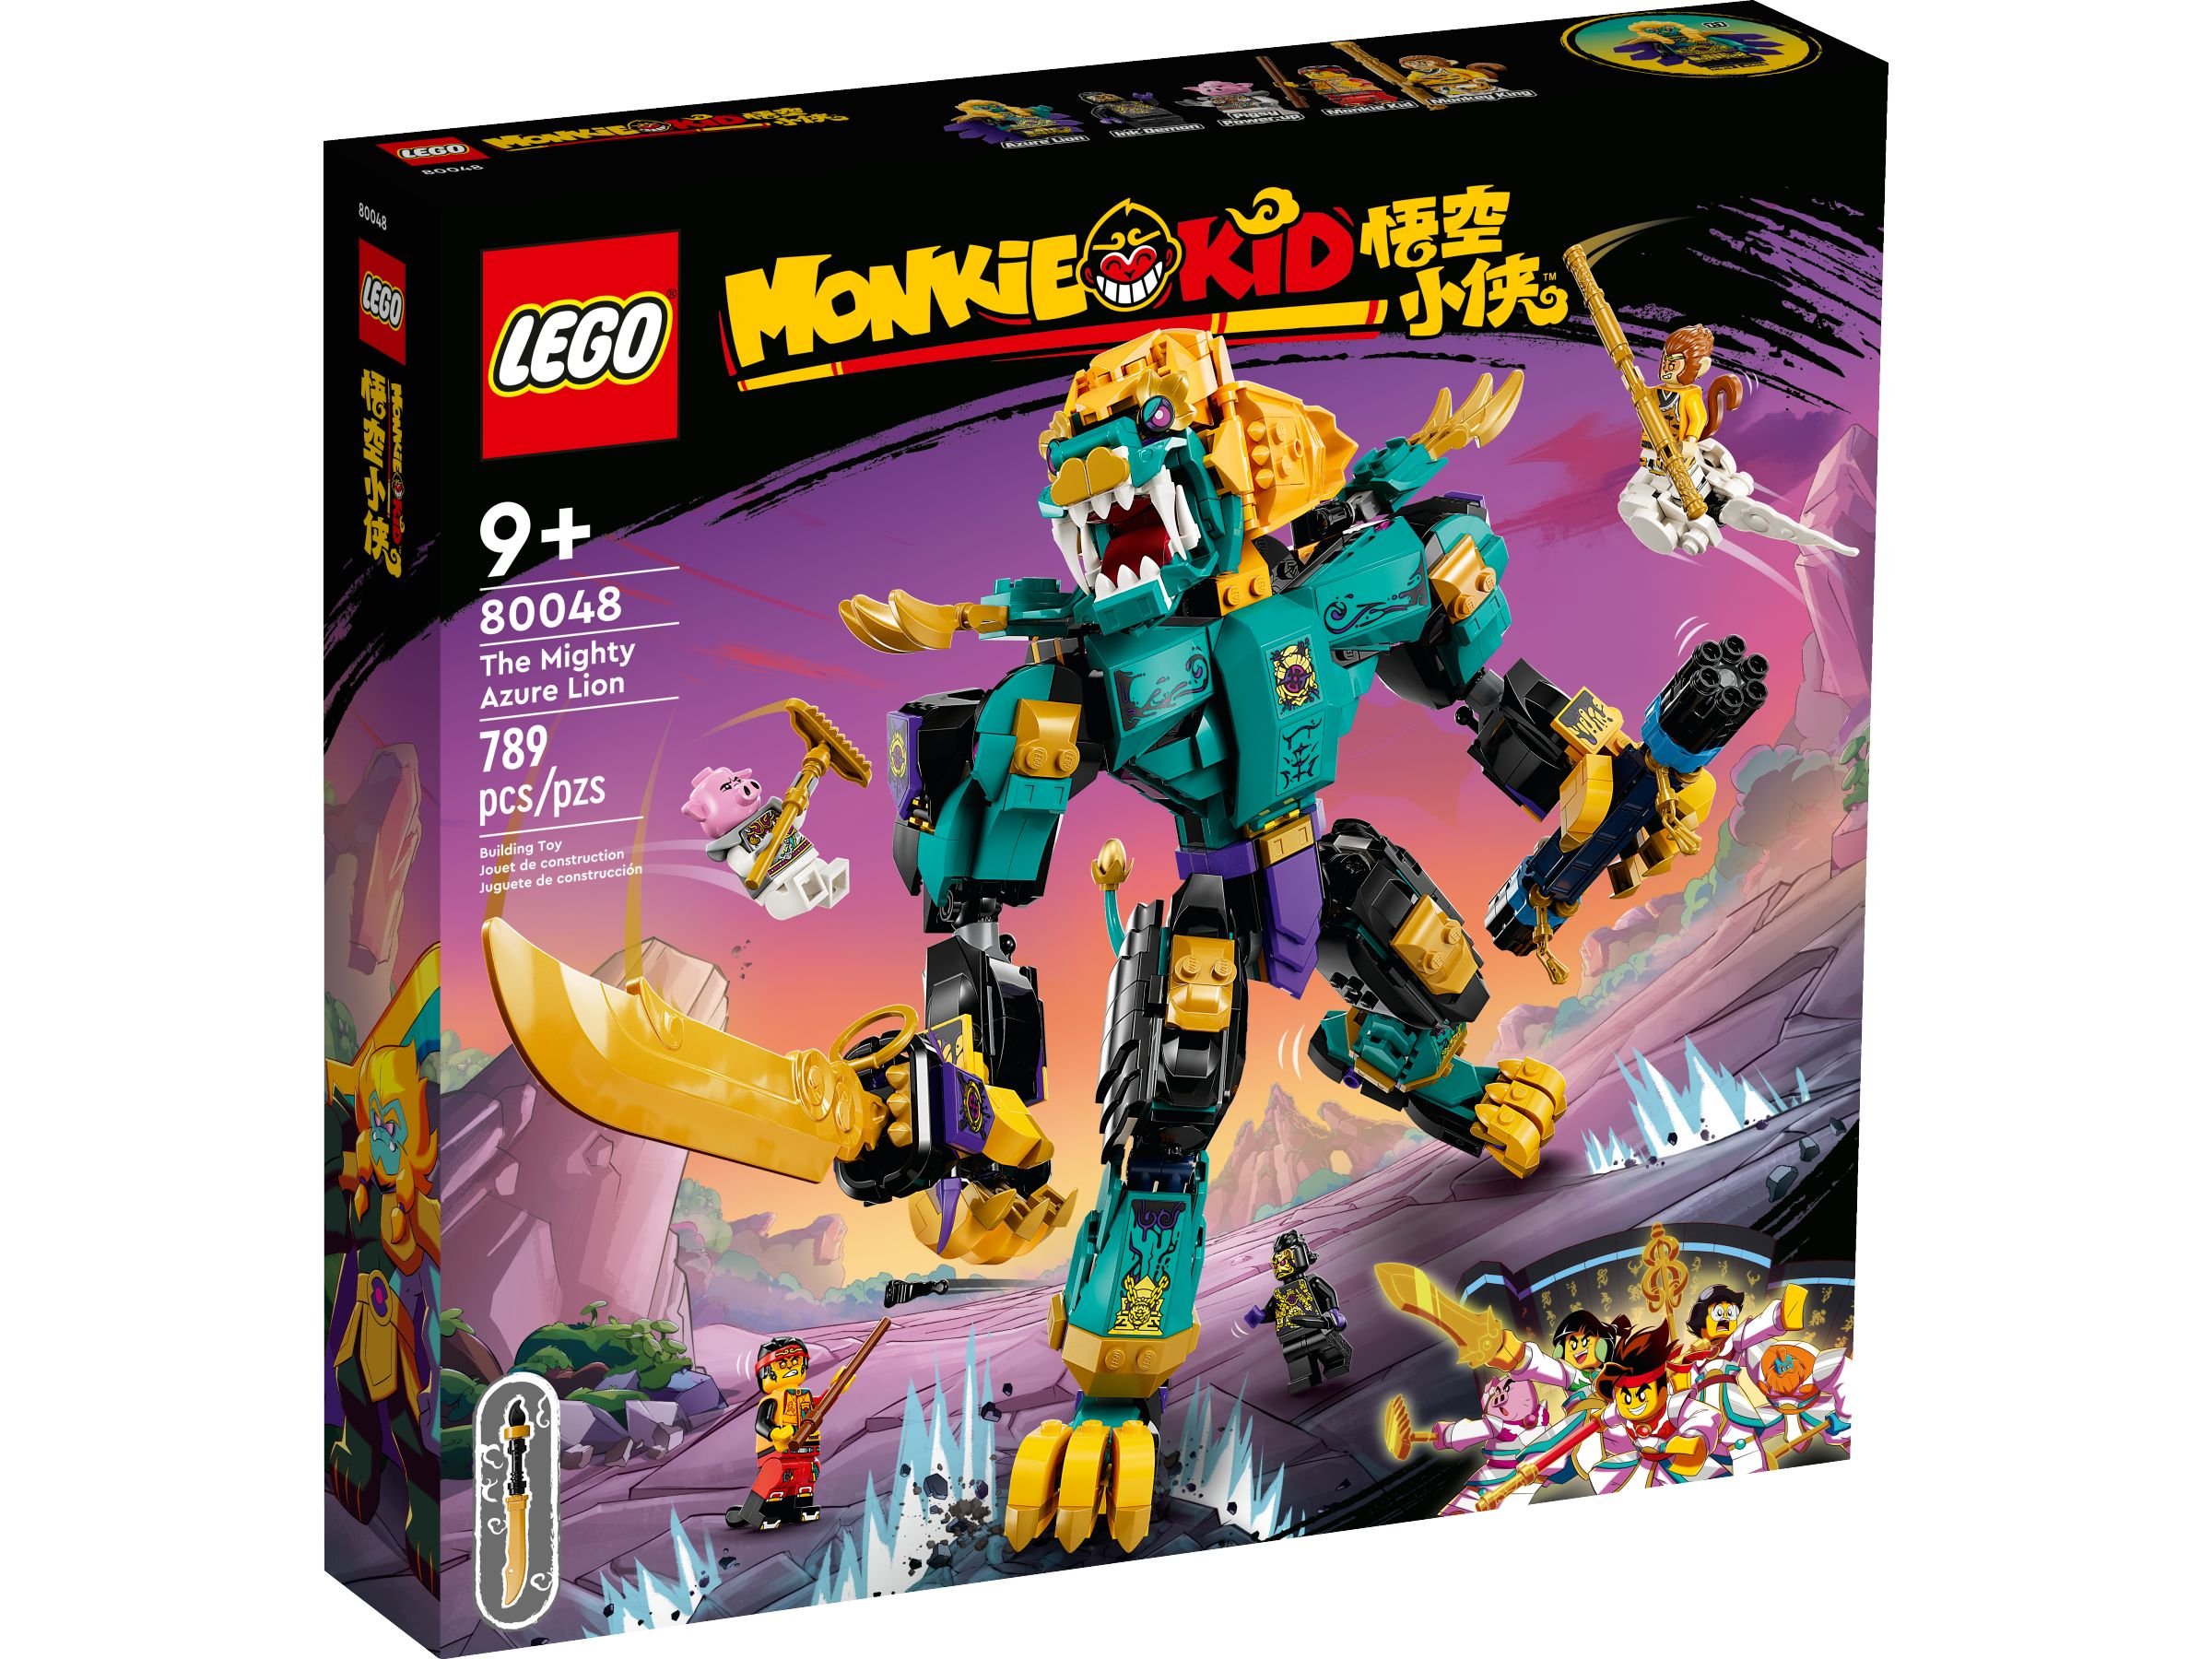 LEGO Monkie Kid 80048 Der mächtige Azure Lion LEGO_80048_alt1.jpg